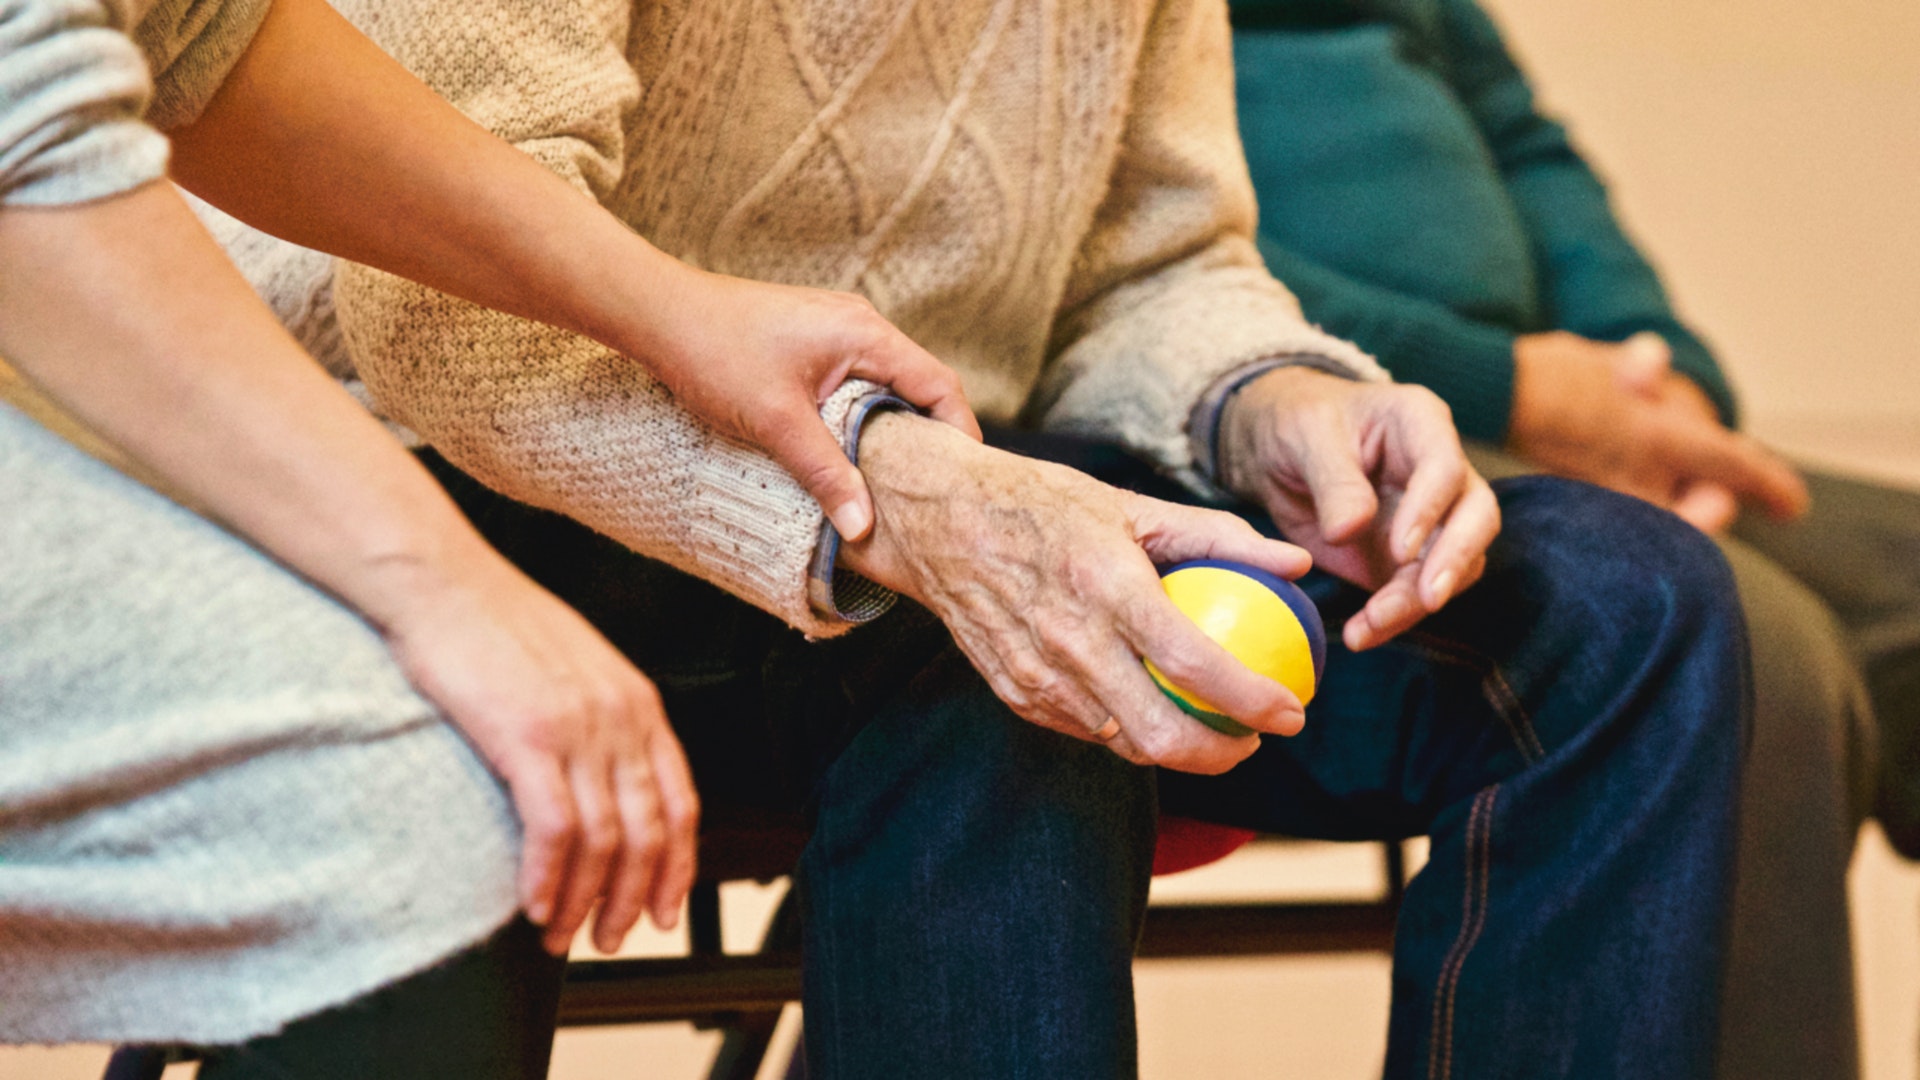 Programes d’ajuda a la gent gran: com es pot reduir l’aïllament social